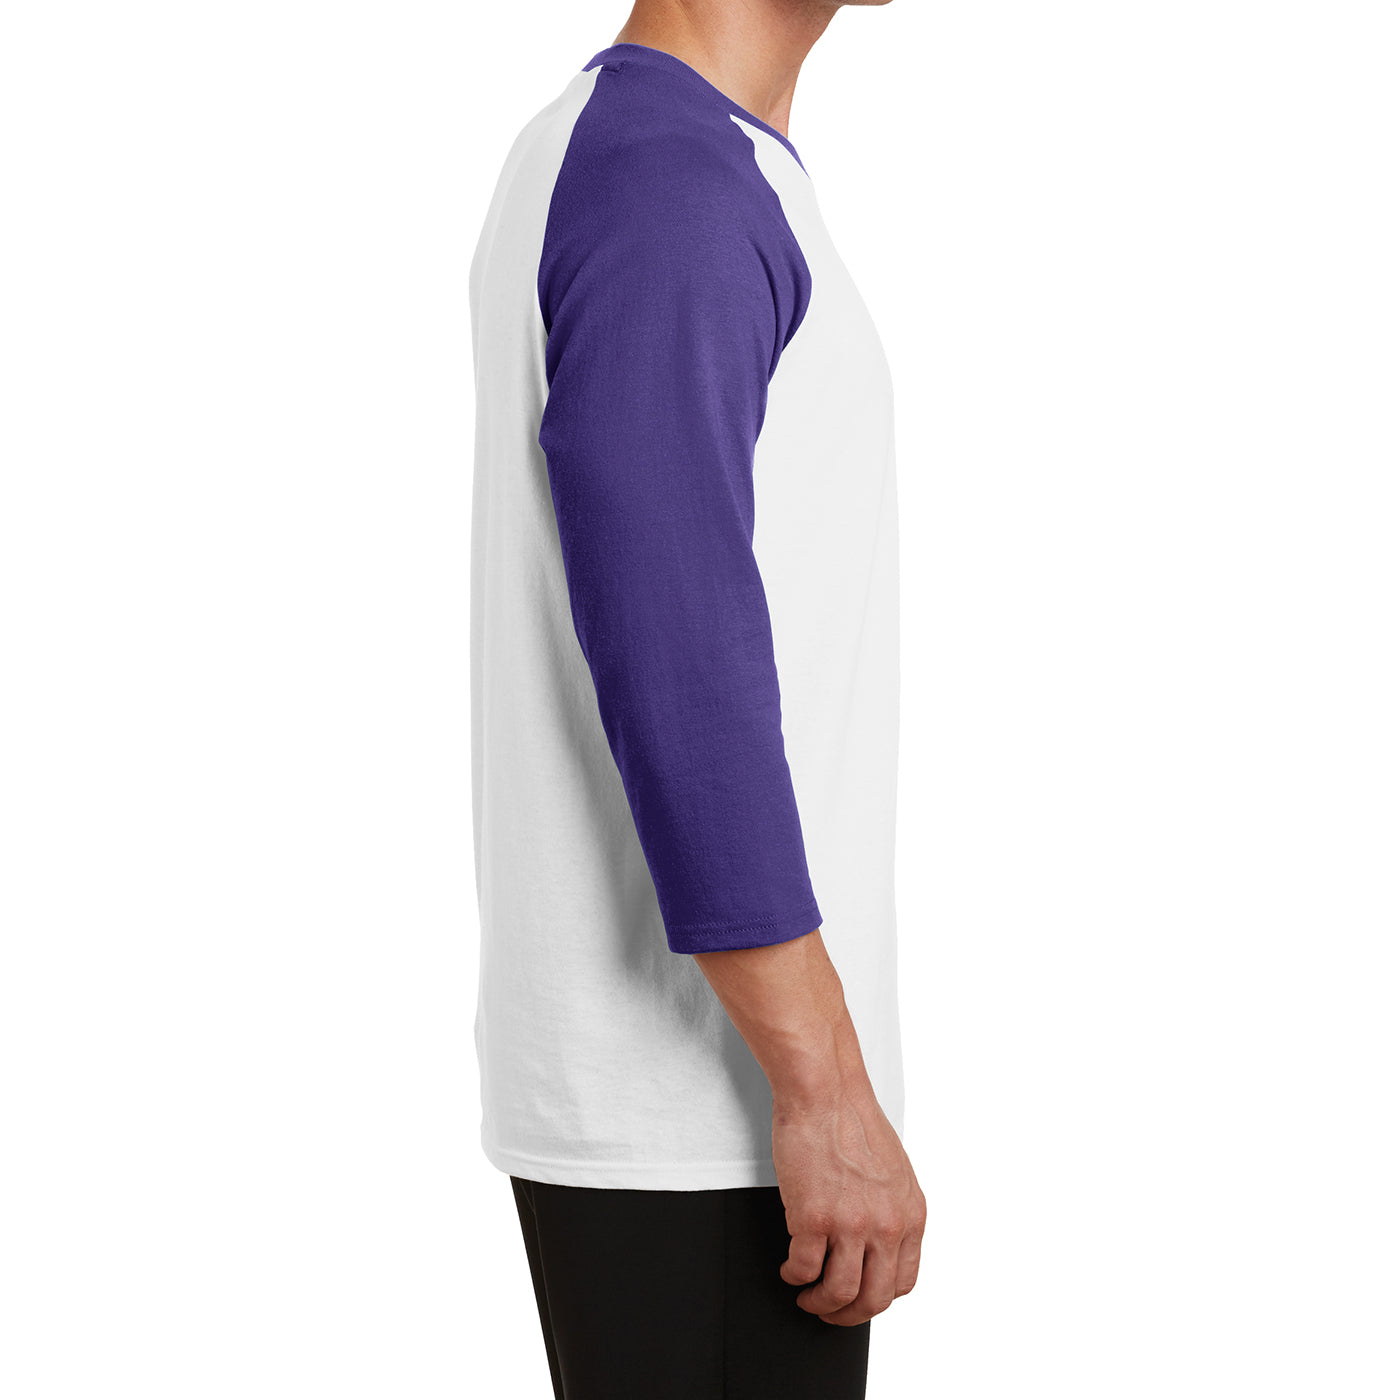 Men's Core Blend 3/4-Sleeve Raglan Tee - White/ Purple - Side